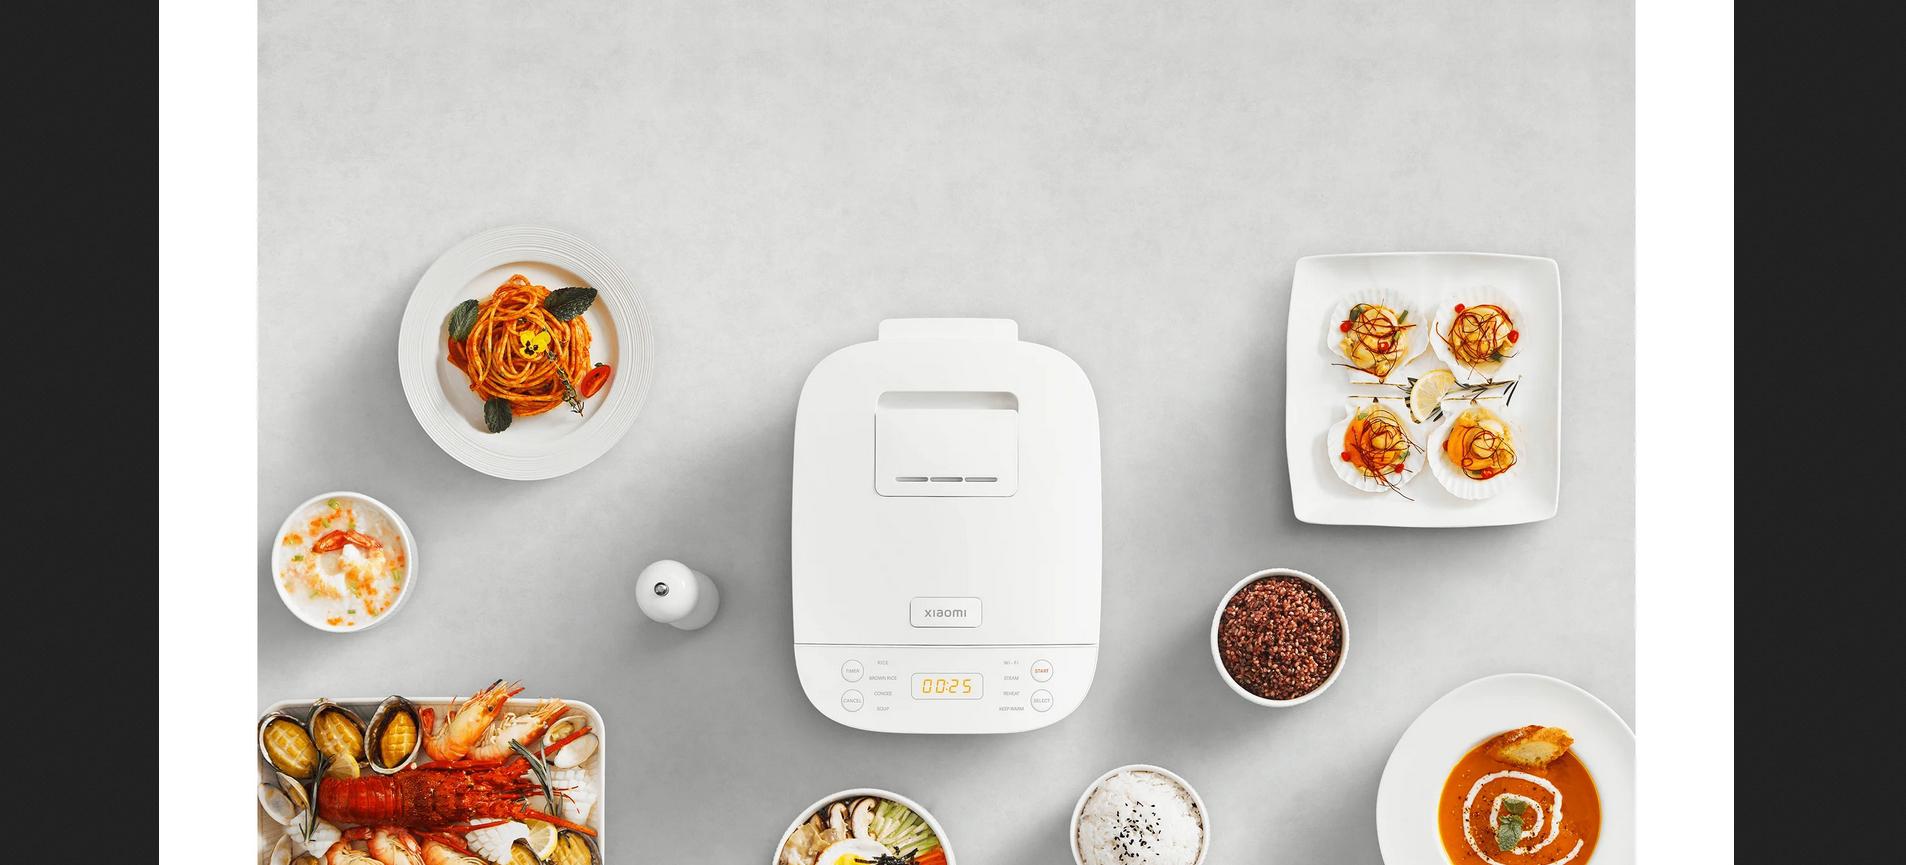 Aż 8 funkcji inteligentnego ryżowaru w jednym urządzeniu Xiaomi Smart Multifunctional Rice Cooker